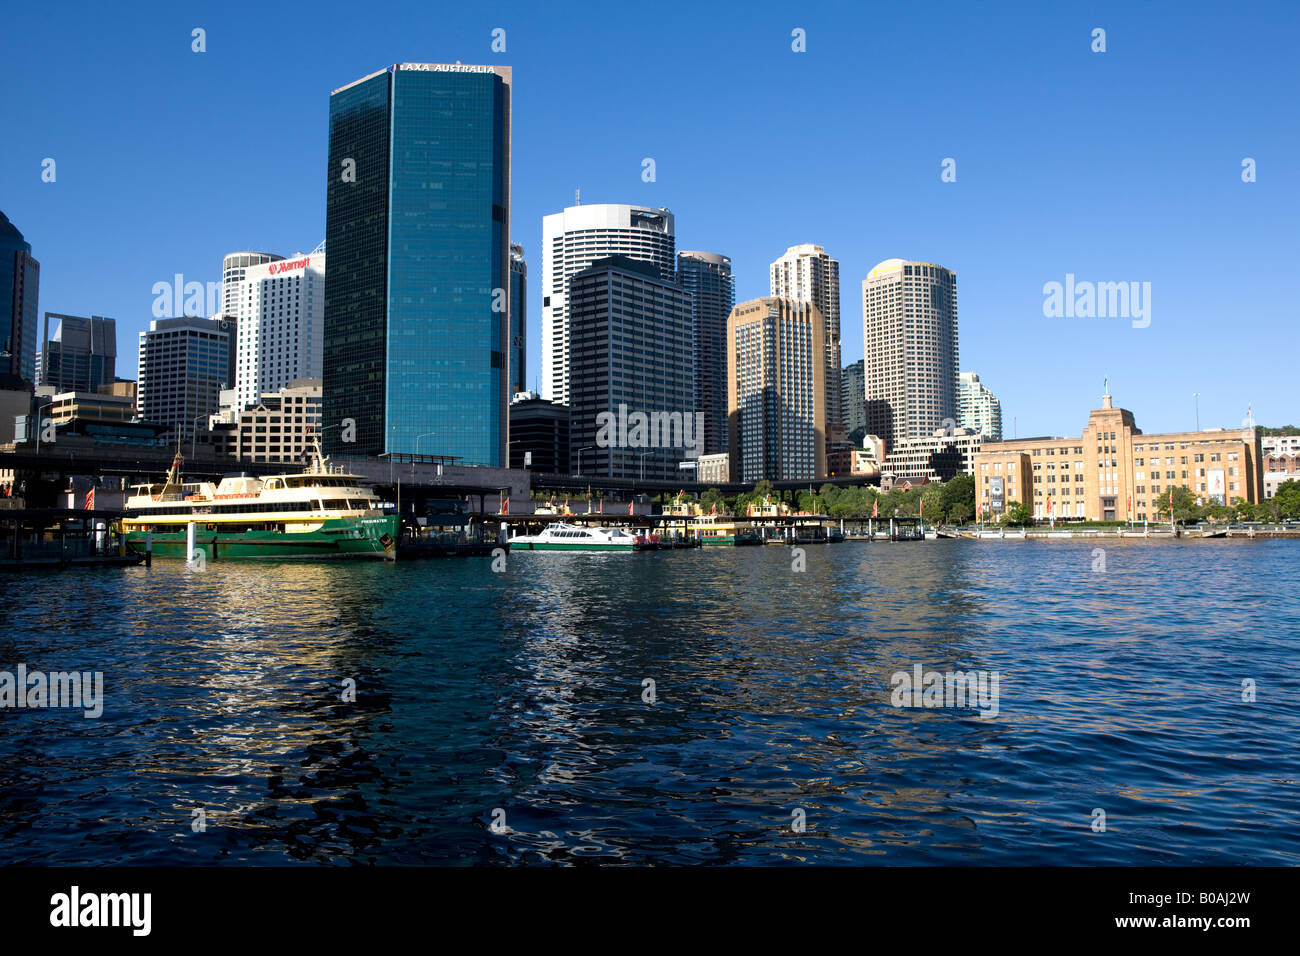 Quartier central des affaires de Sydney NSW Australie Nouvelle Galles du Sud Banque D'Images